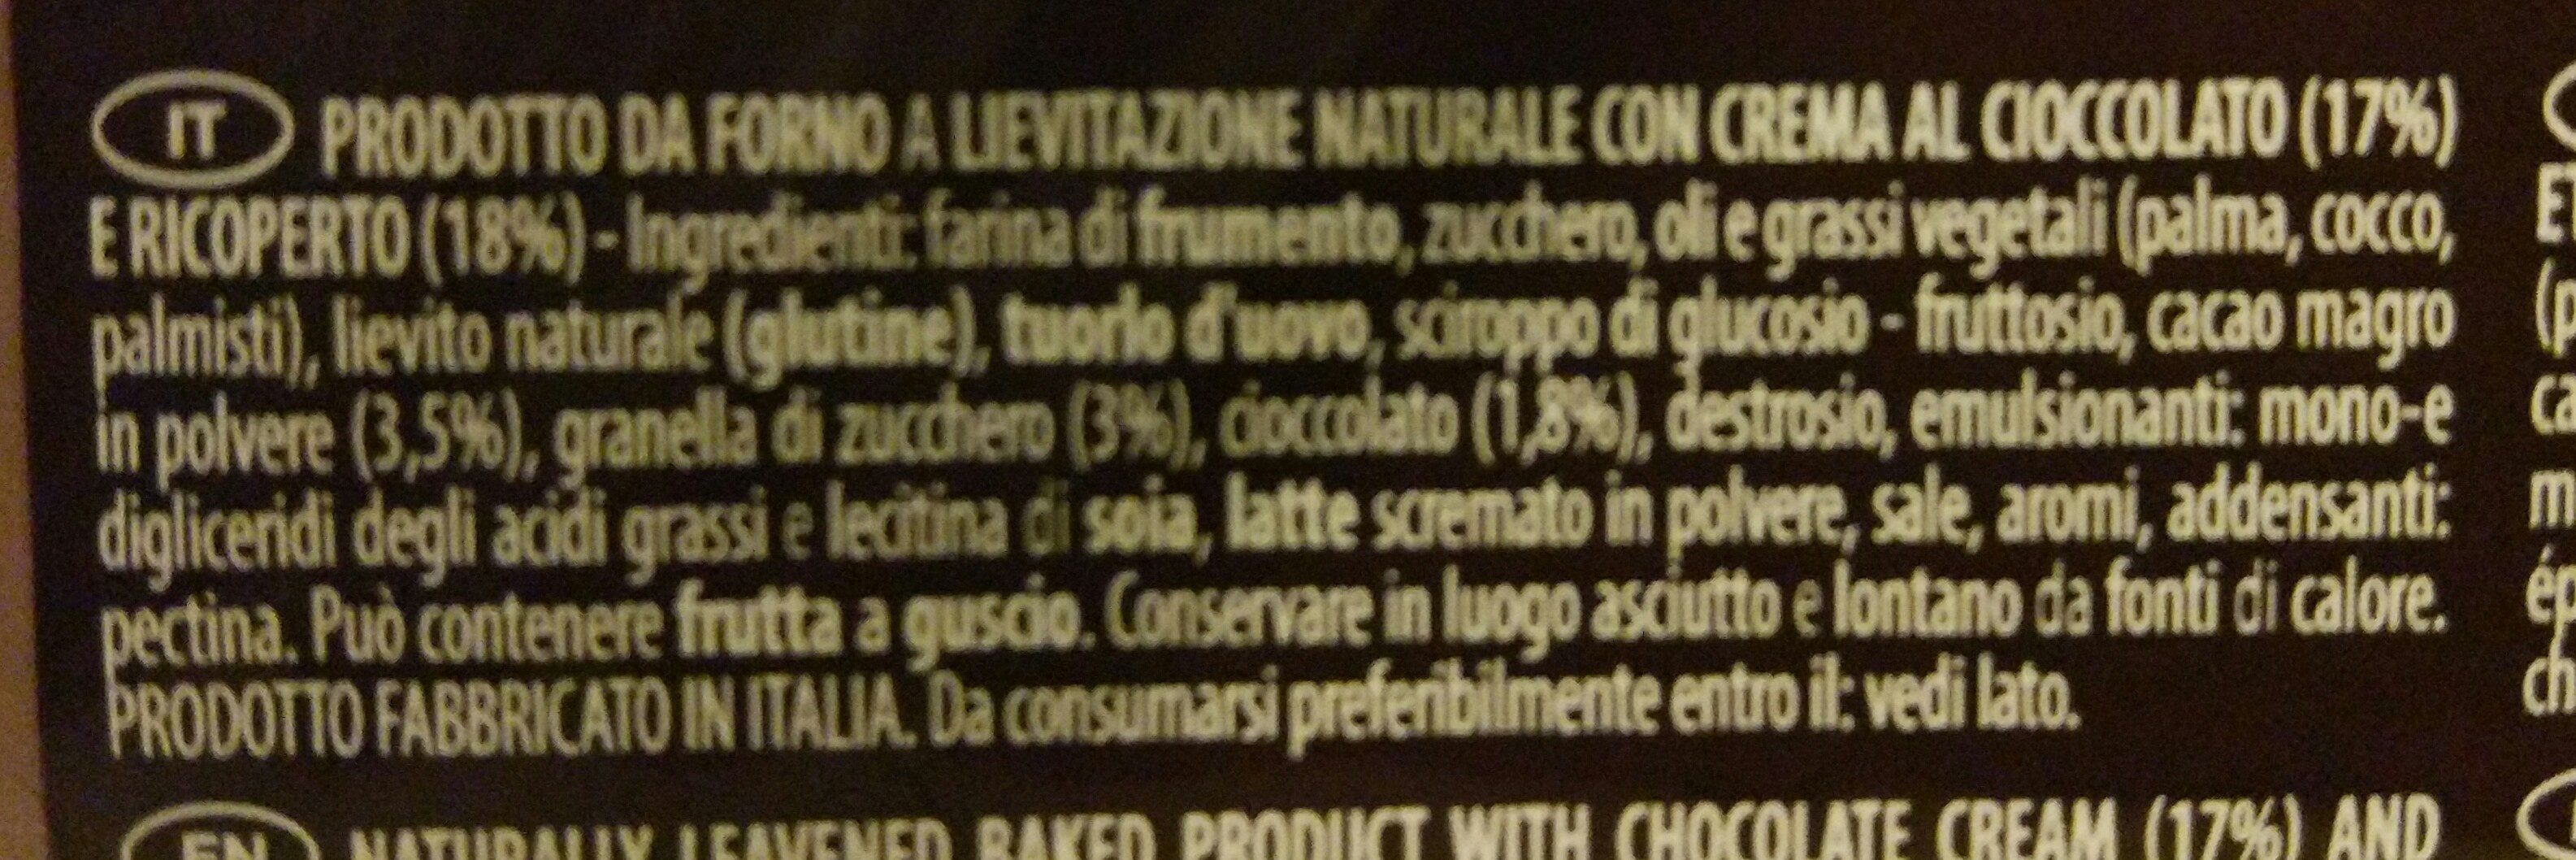 Buondì Cioccolato - Ingredientes - it